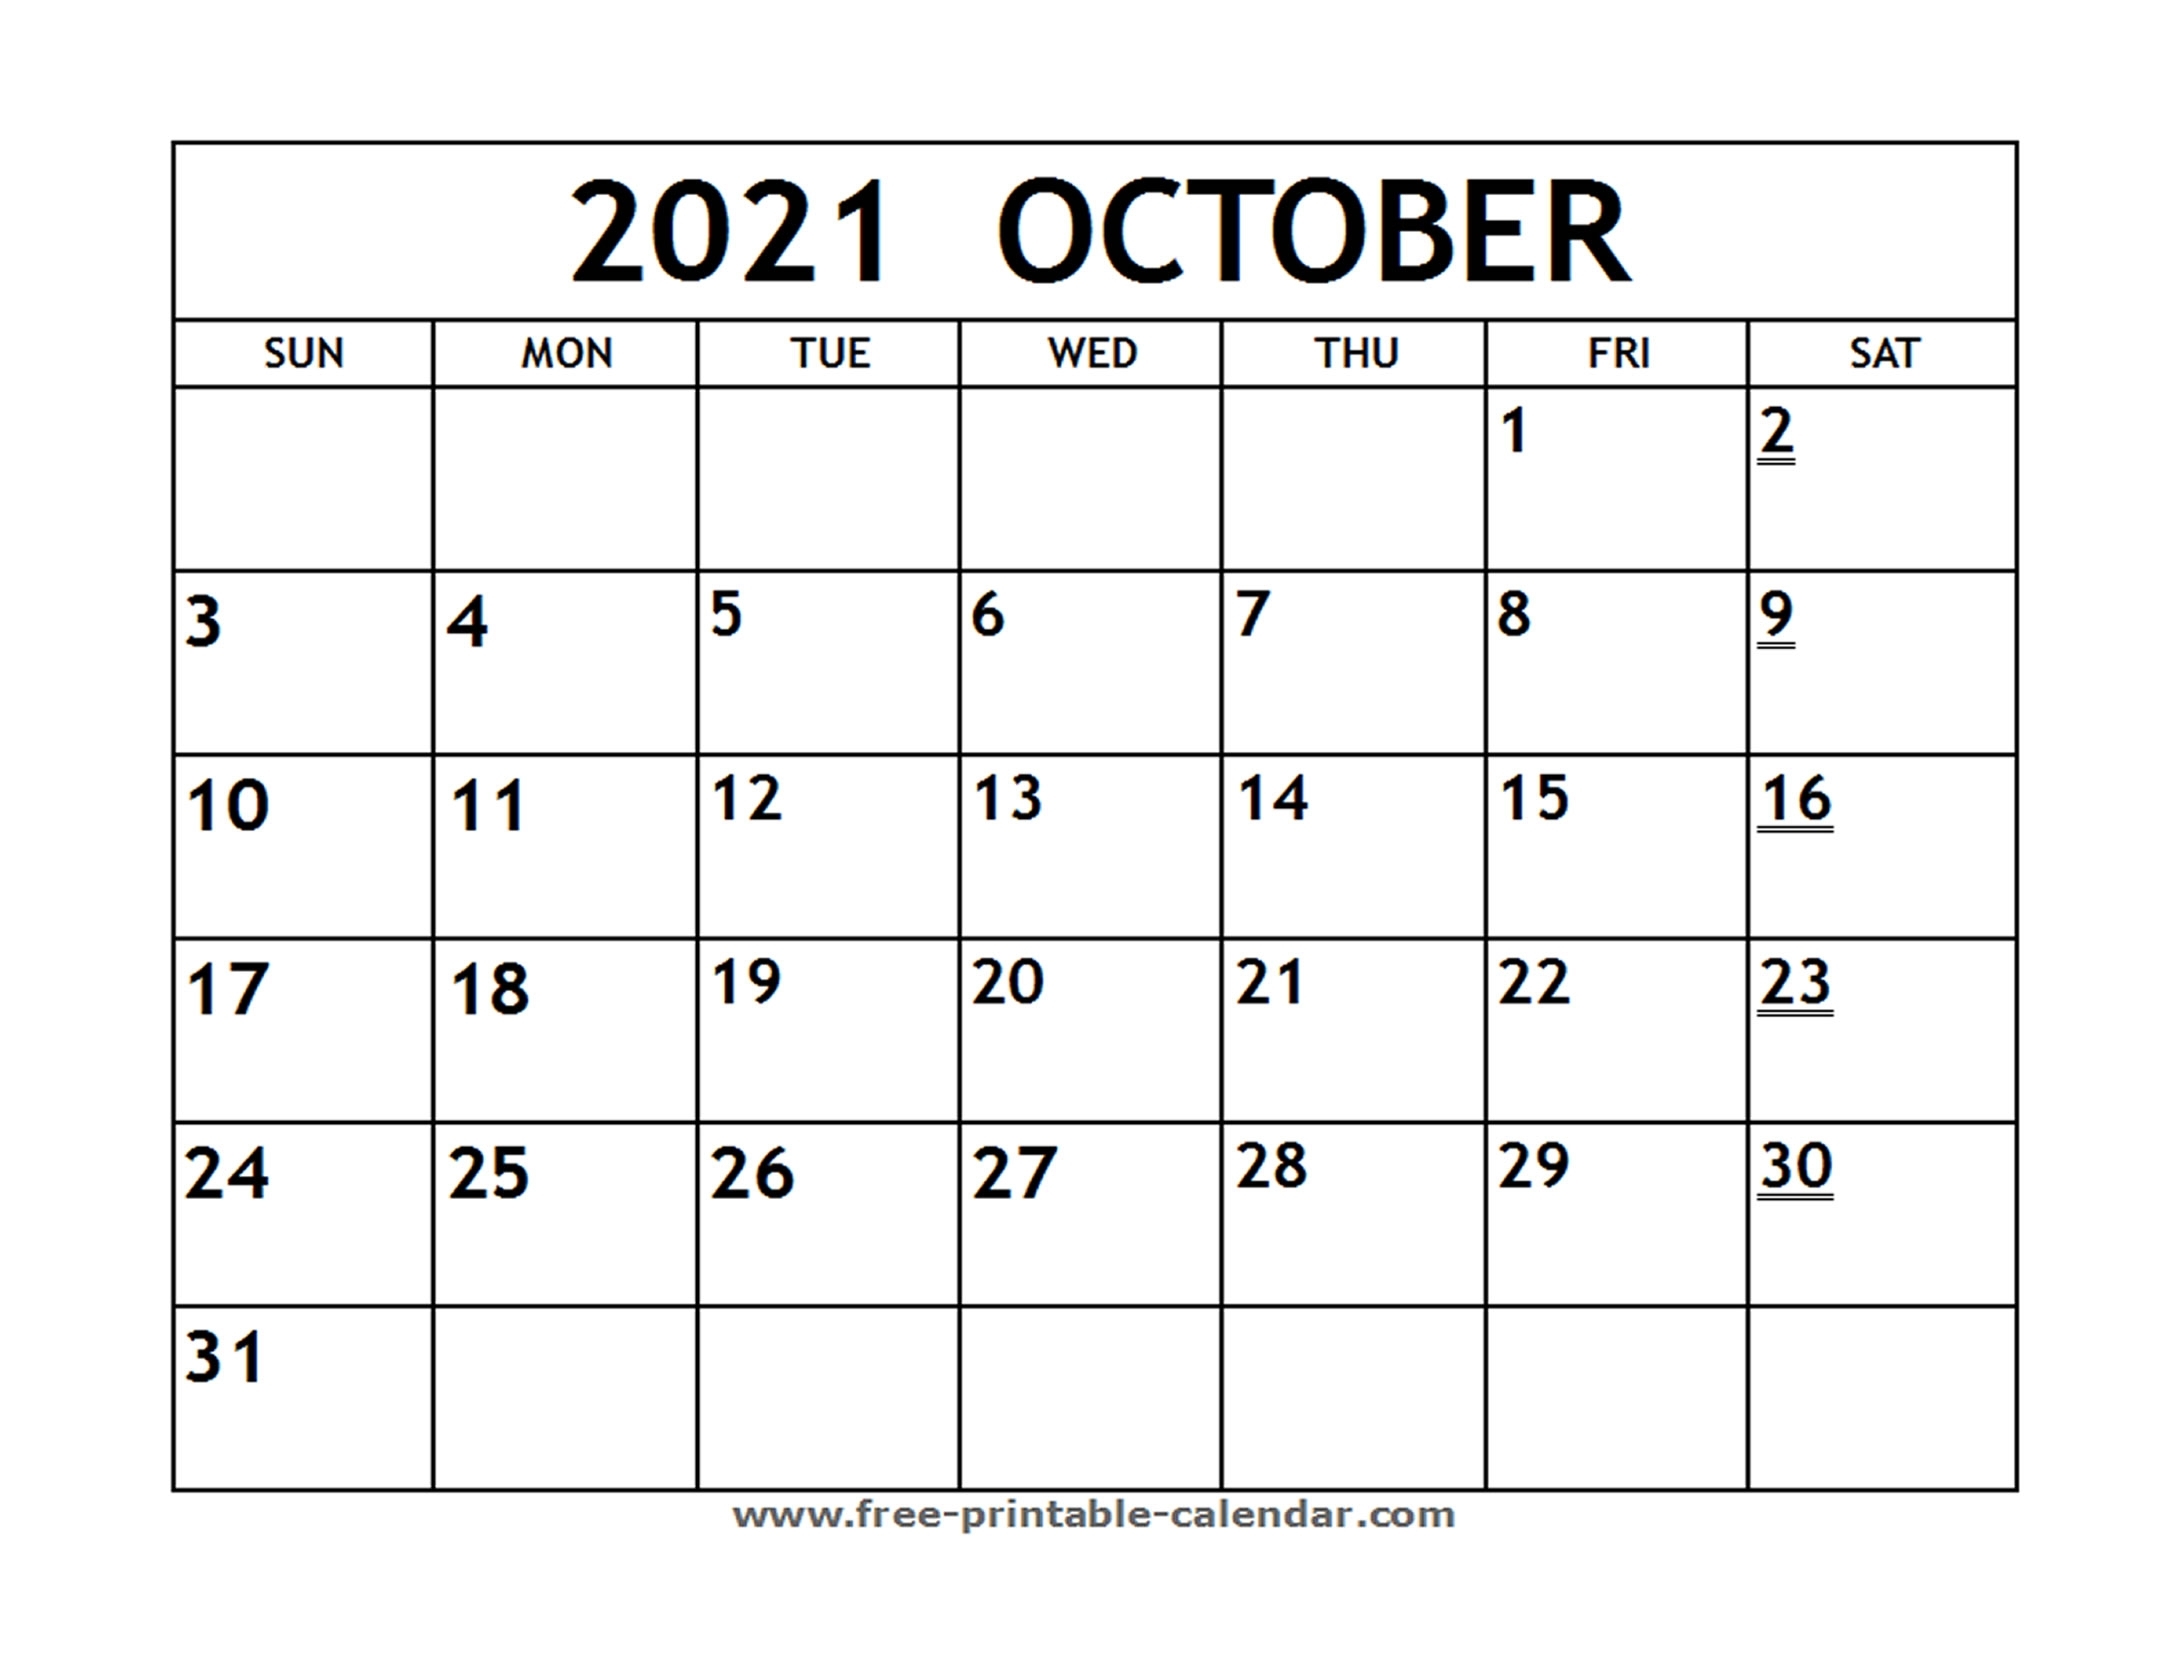 Printable 2021 October Calendar - Free-Printable-Calendar